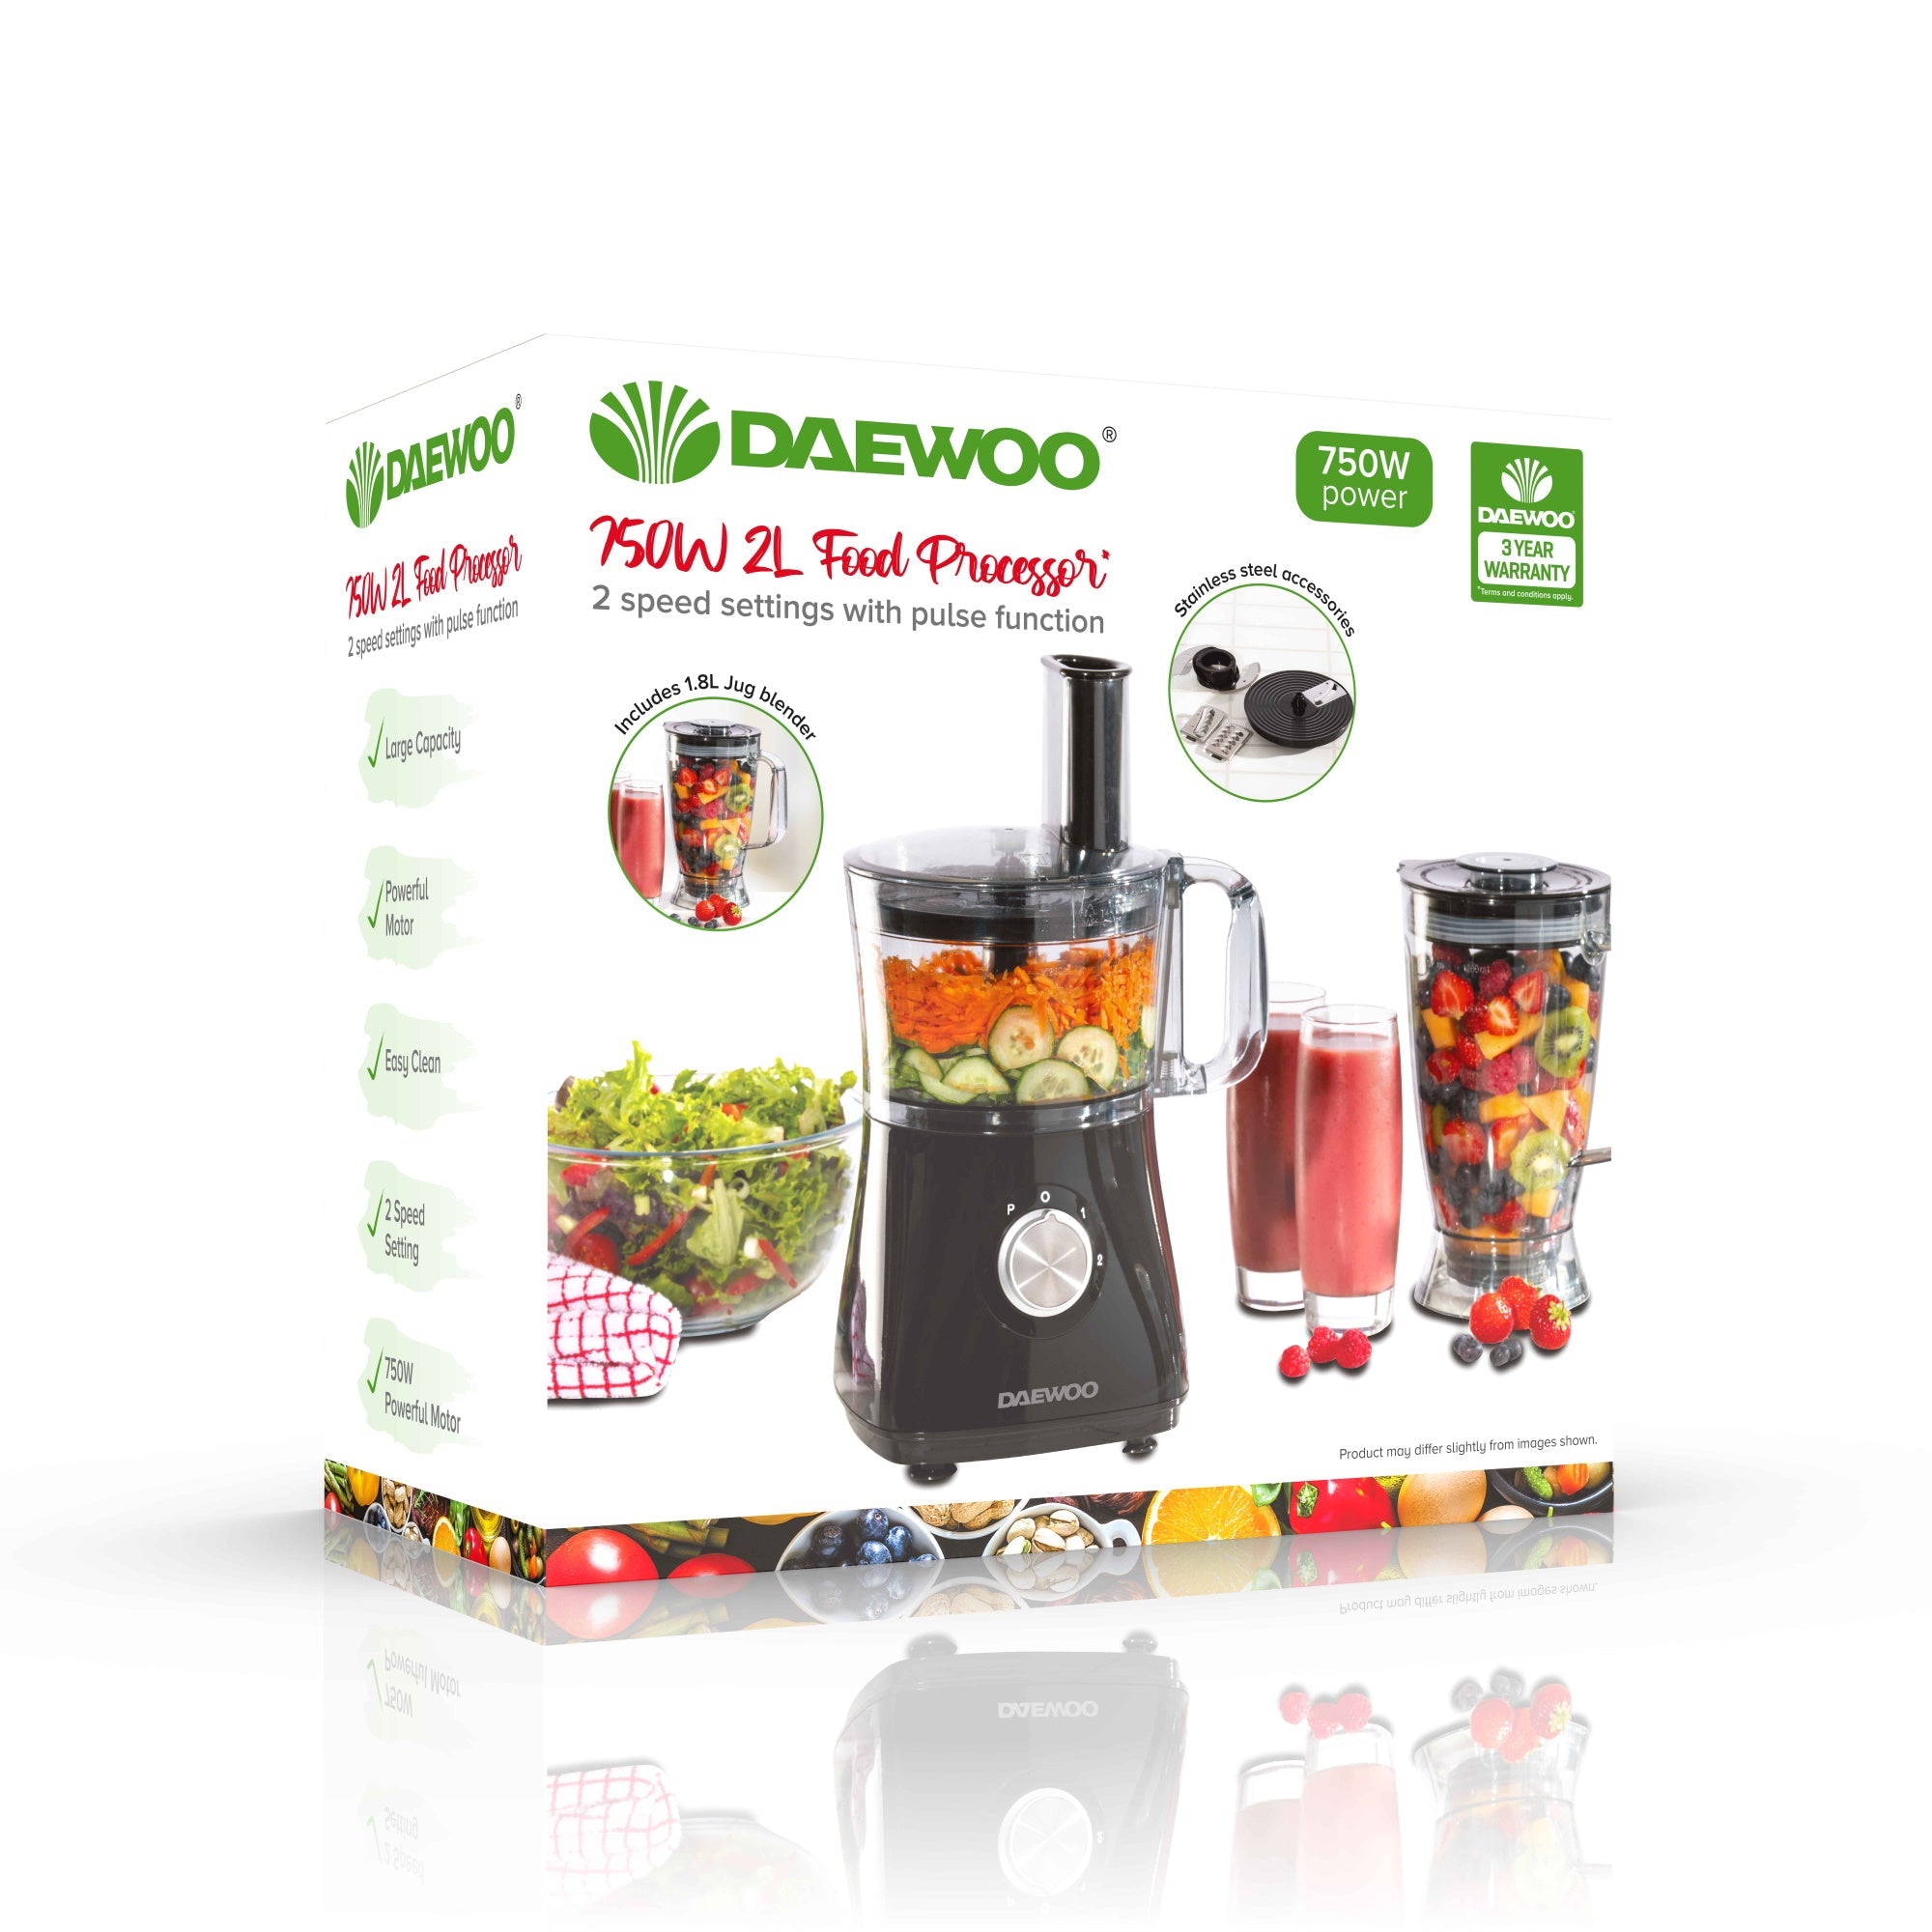 Daewoo SDA2100 Food Processor 750W 2Ltr - Premium Food Processors from Daewoo - Just $53.95! Shop now at W Hurst & Son (IW) Ltd